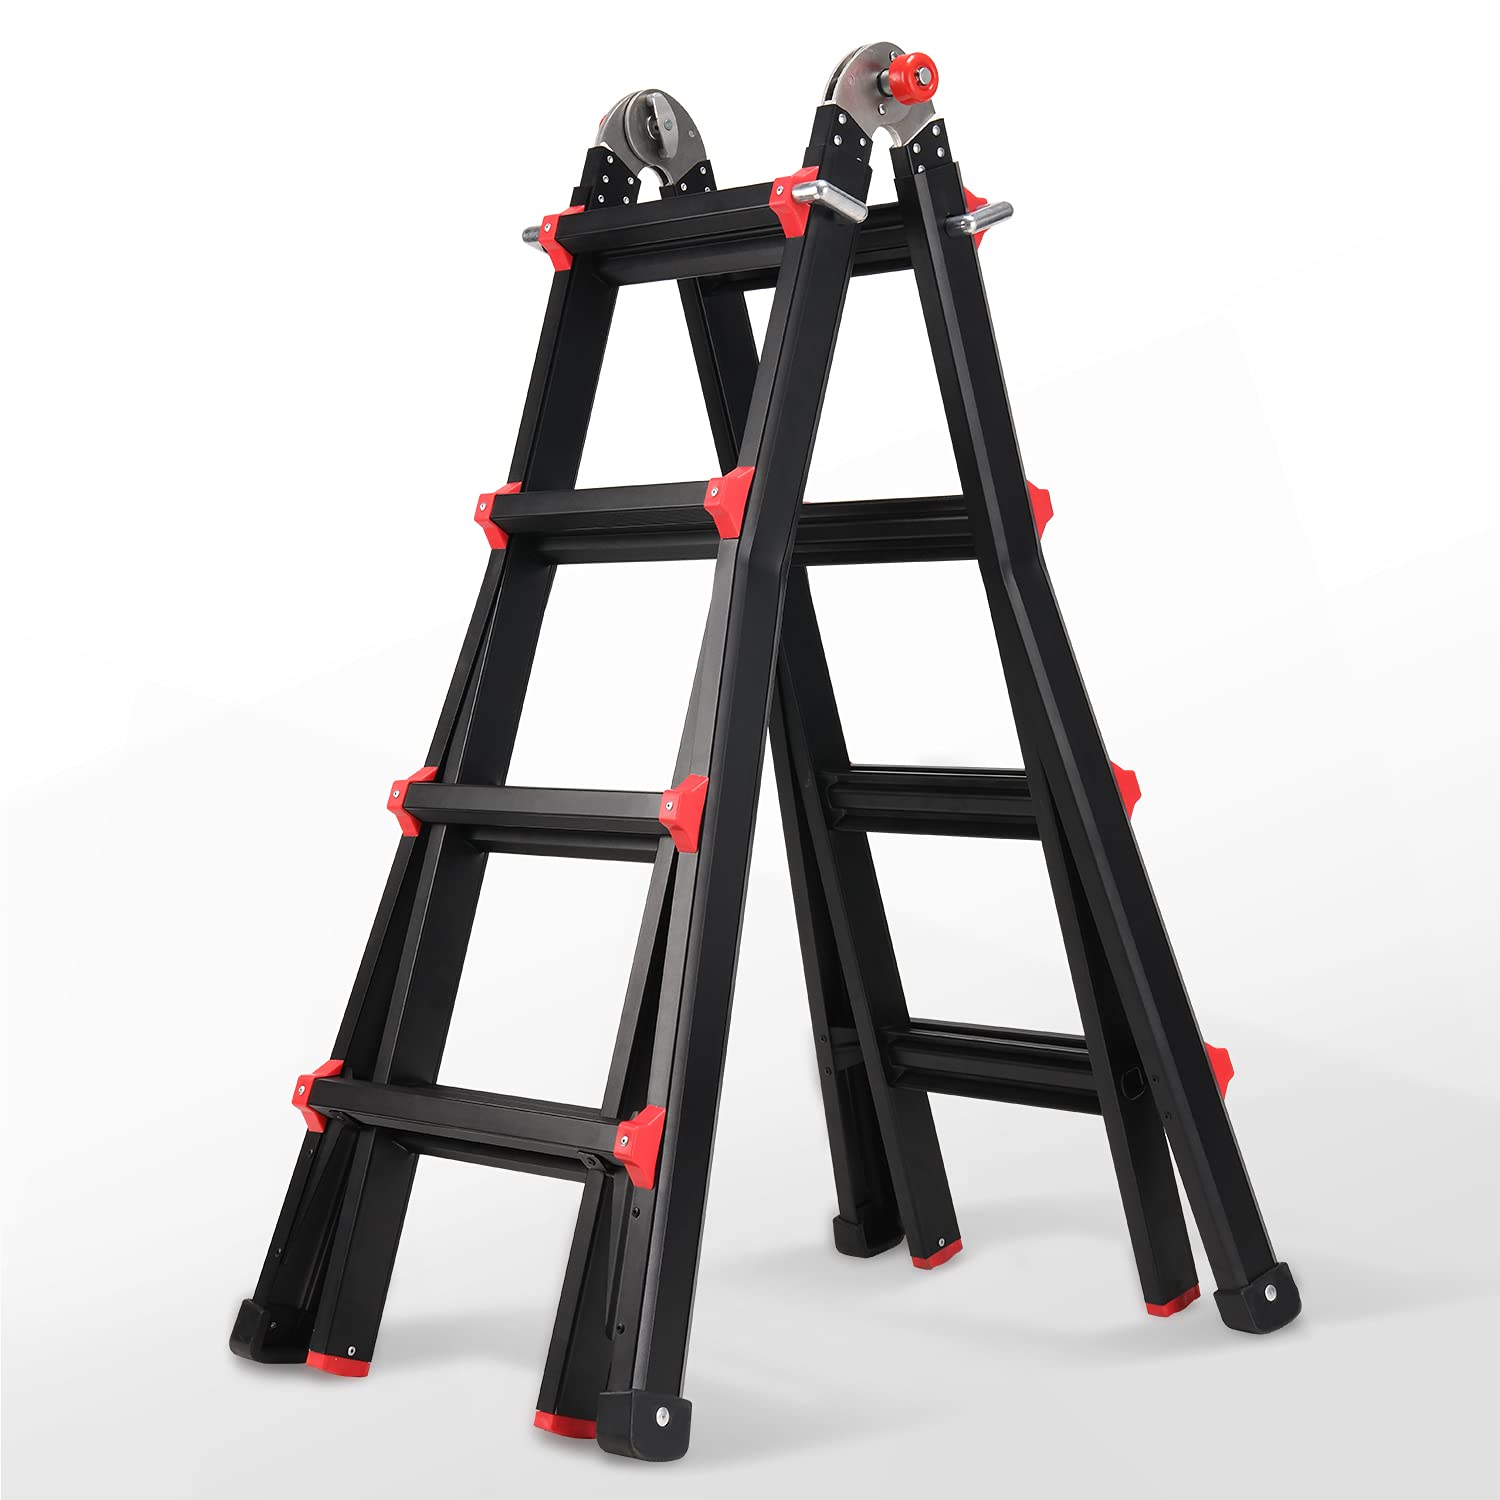 15 Foot a Frame Ladder